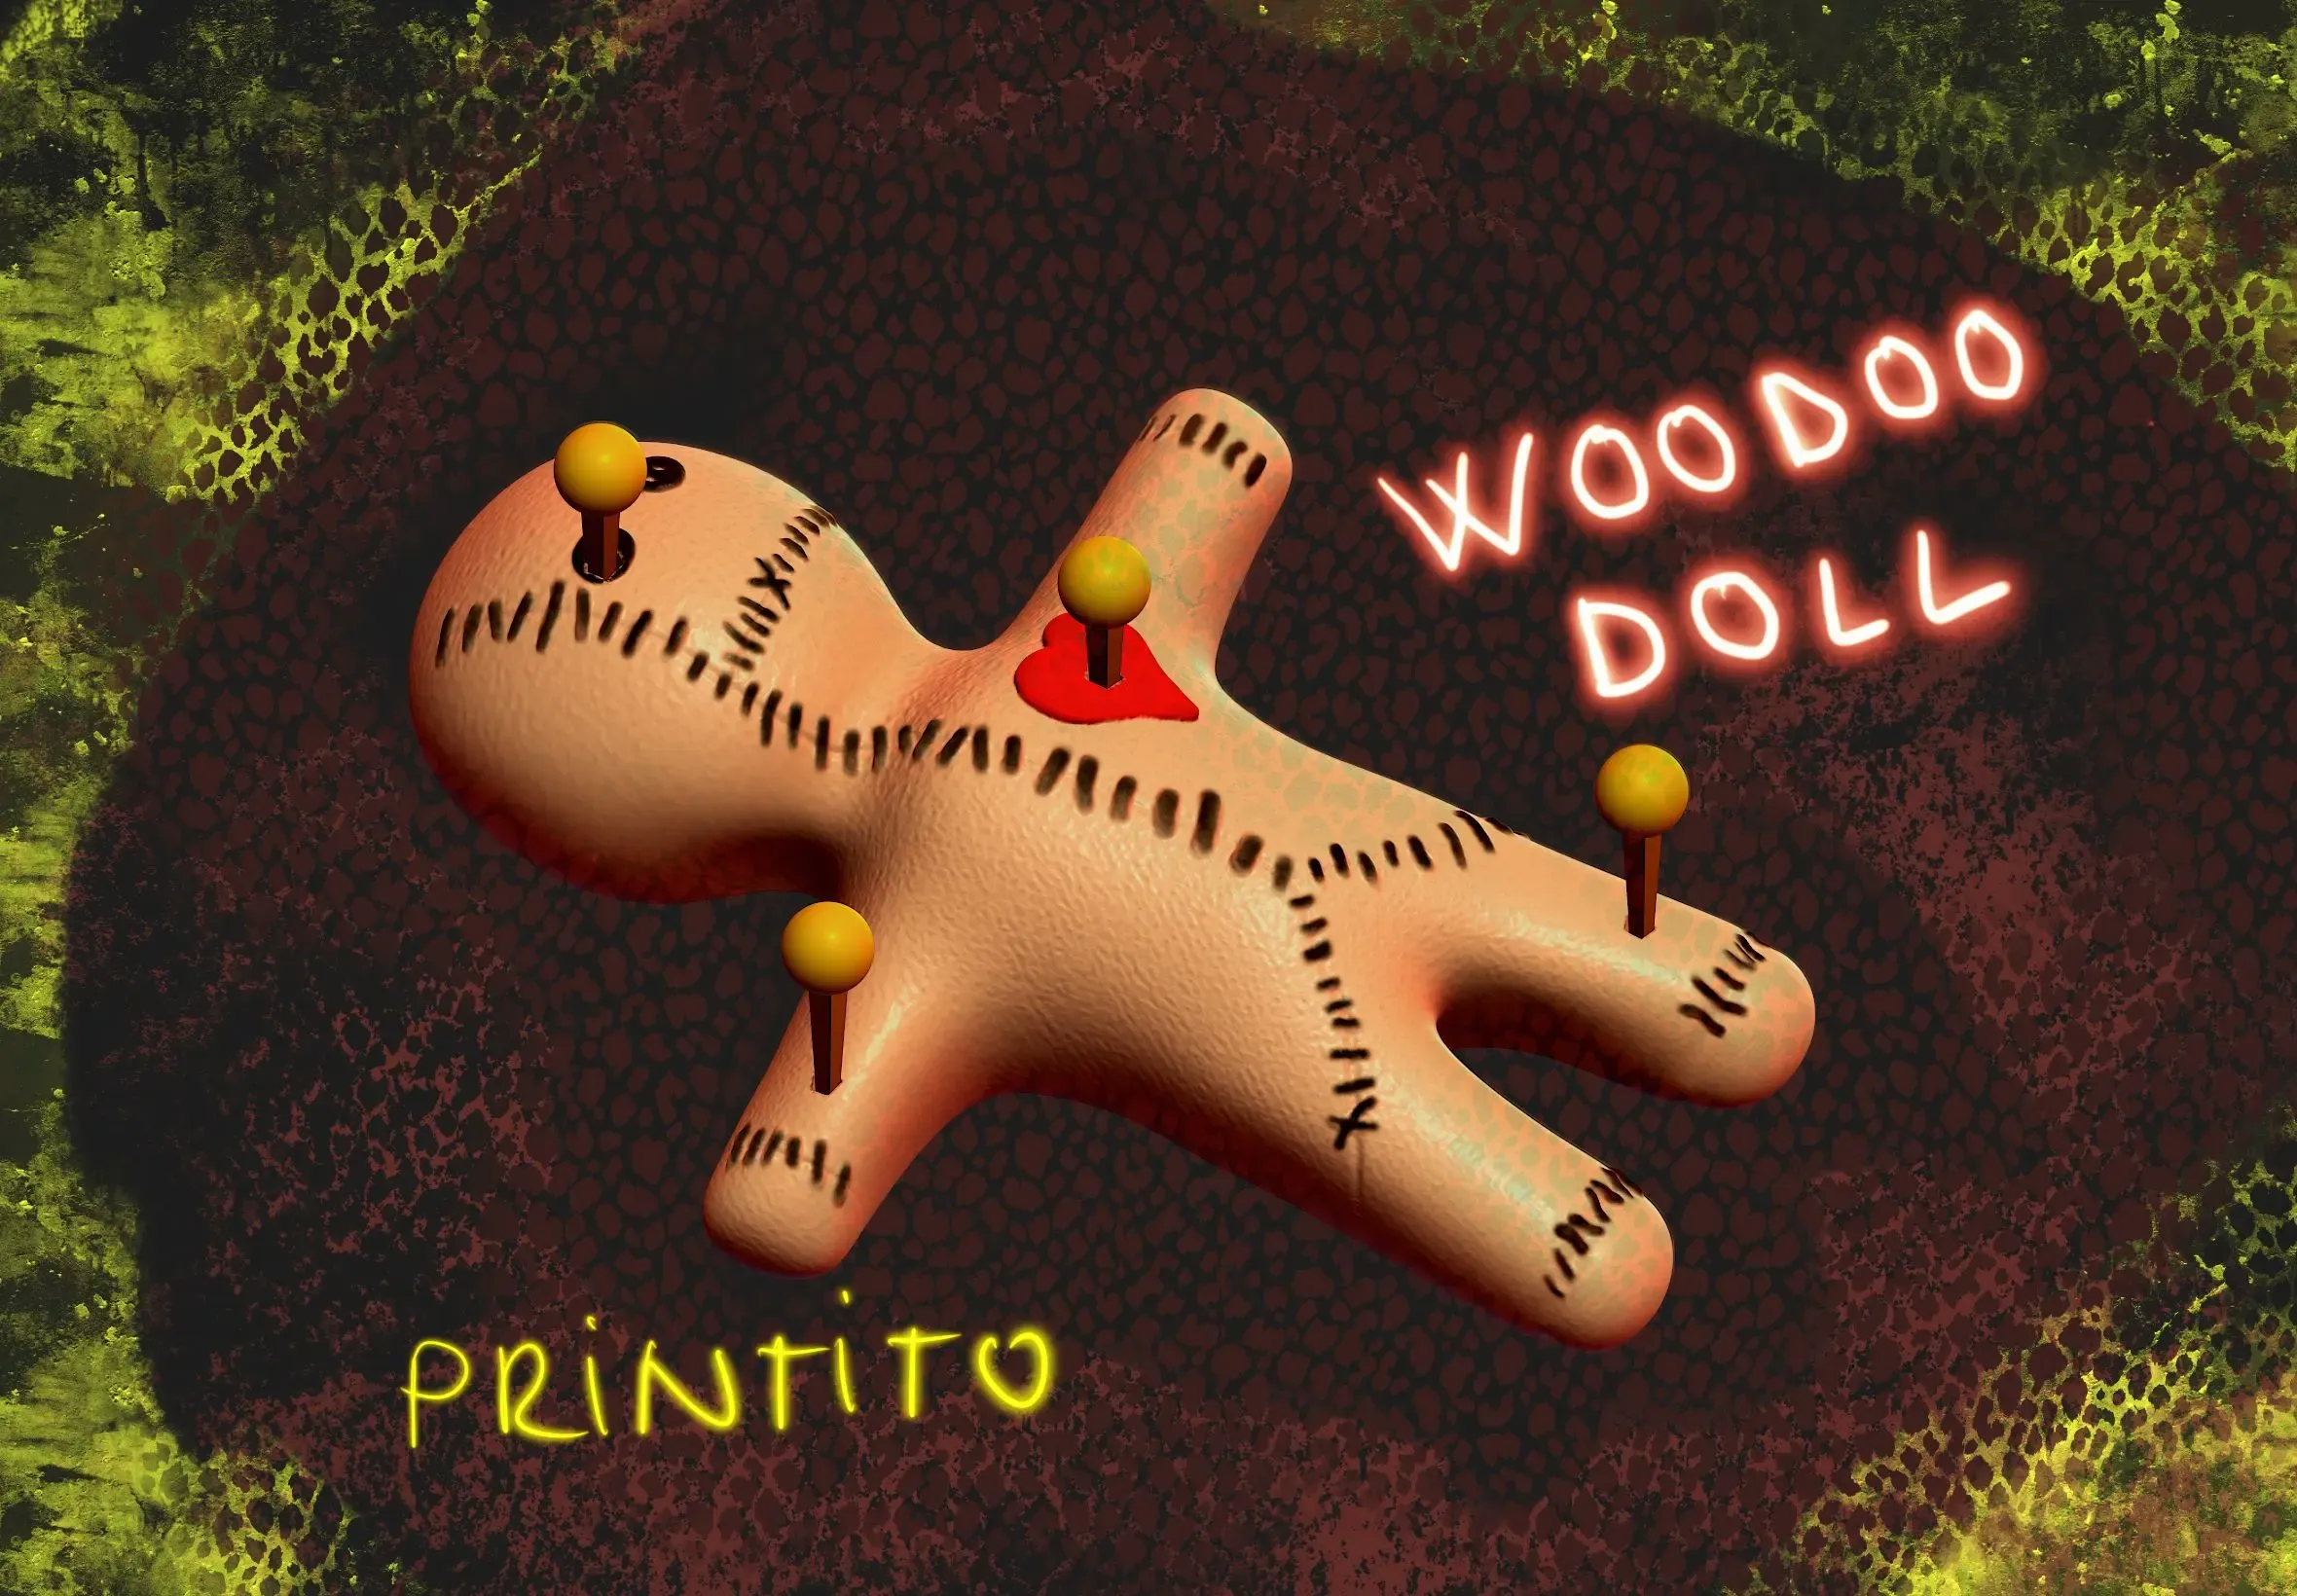 Woodoo doll